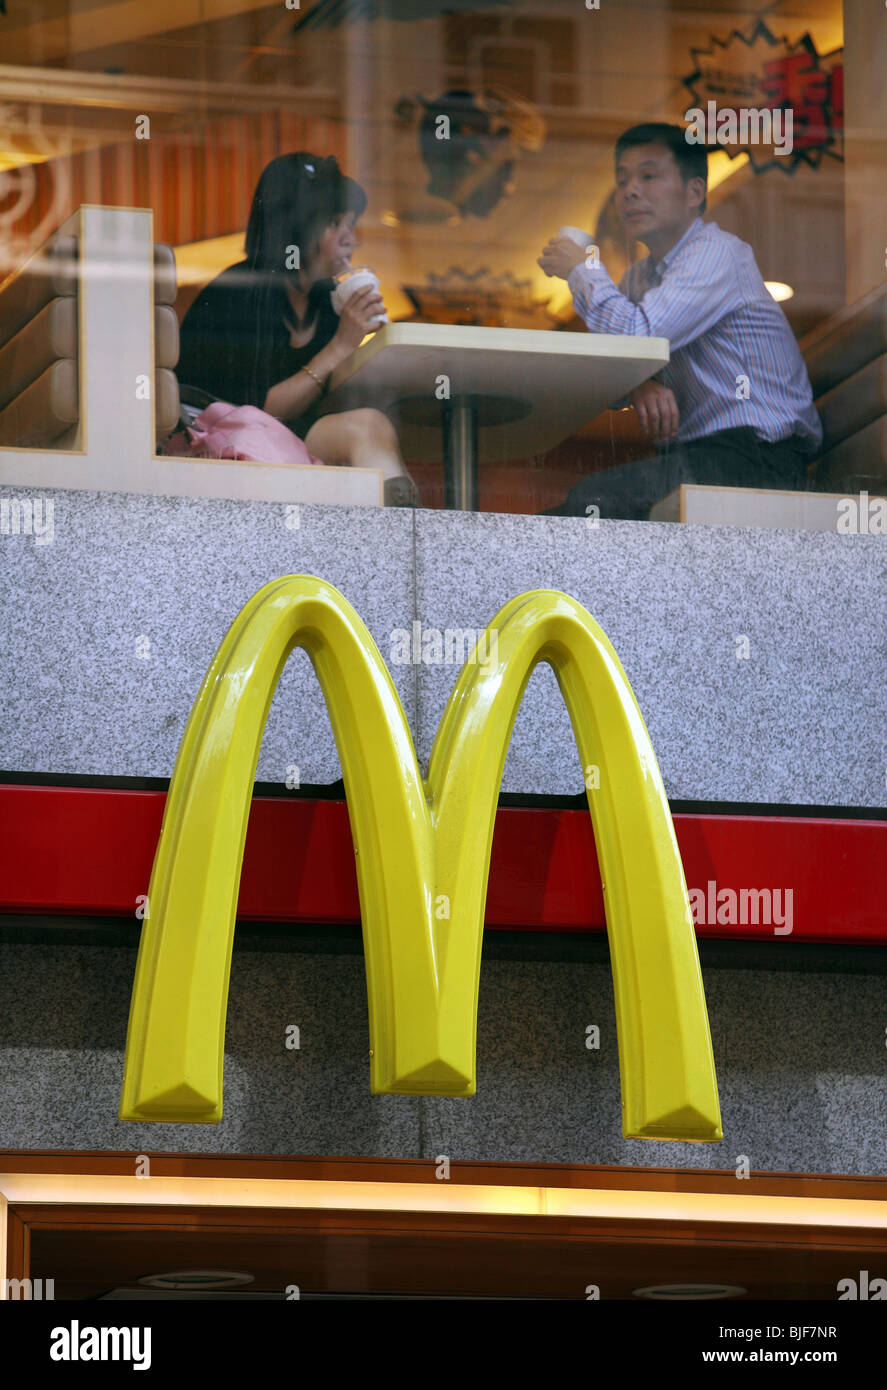 Persone presso un ristorante McDonald's, Macao, Cina Foto Stock